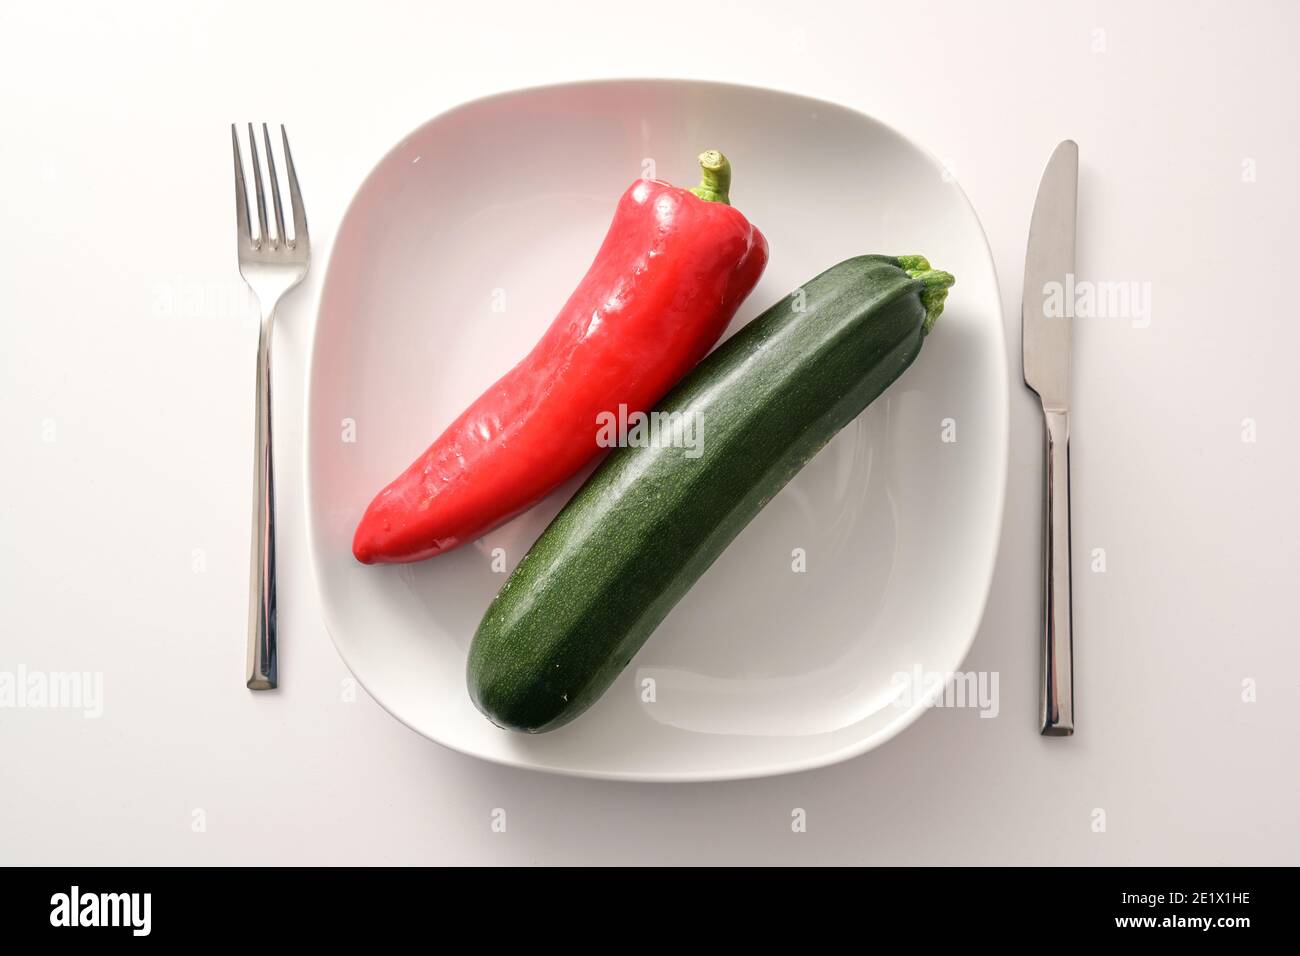 Roher roter, spitzer Pfeffer und Zucchini auf weißem Teller und Besteck auf hellem Hintergrund, gesunde Ernährung mit mediterranem Gemüse, um Gewicht zu verlieren Stockfoto